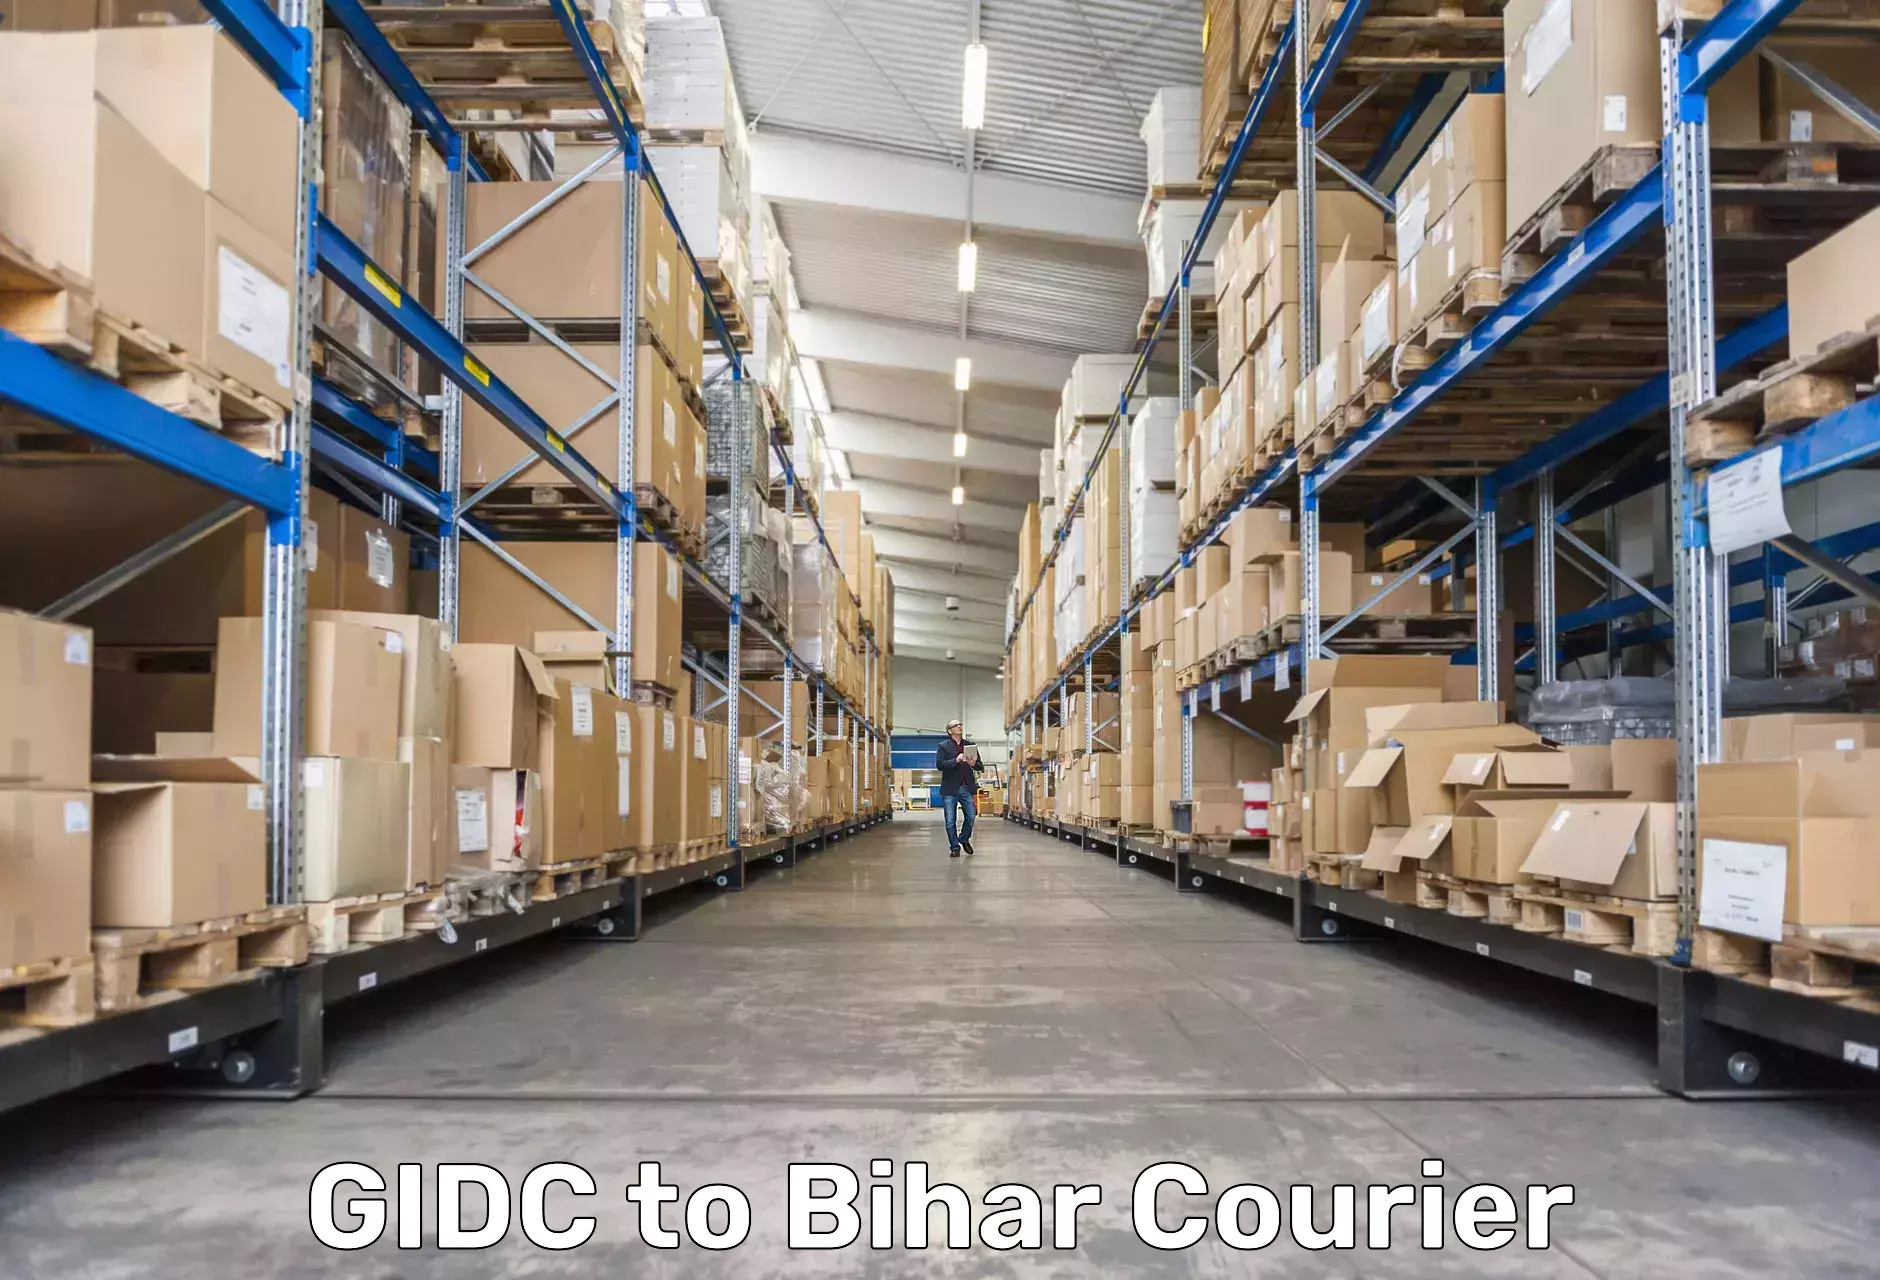 Express courier facilities in GIDC to Bakhri